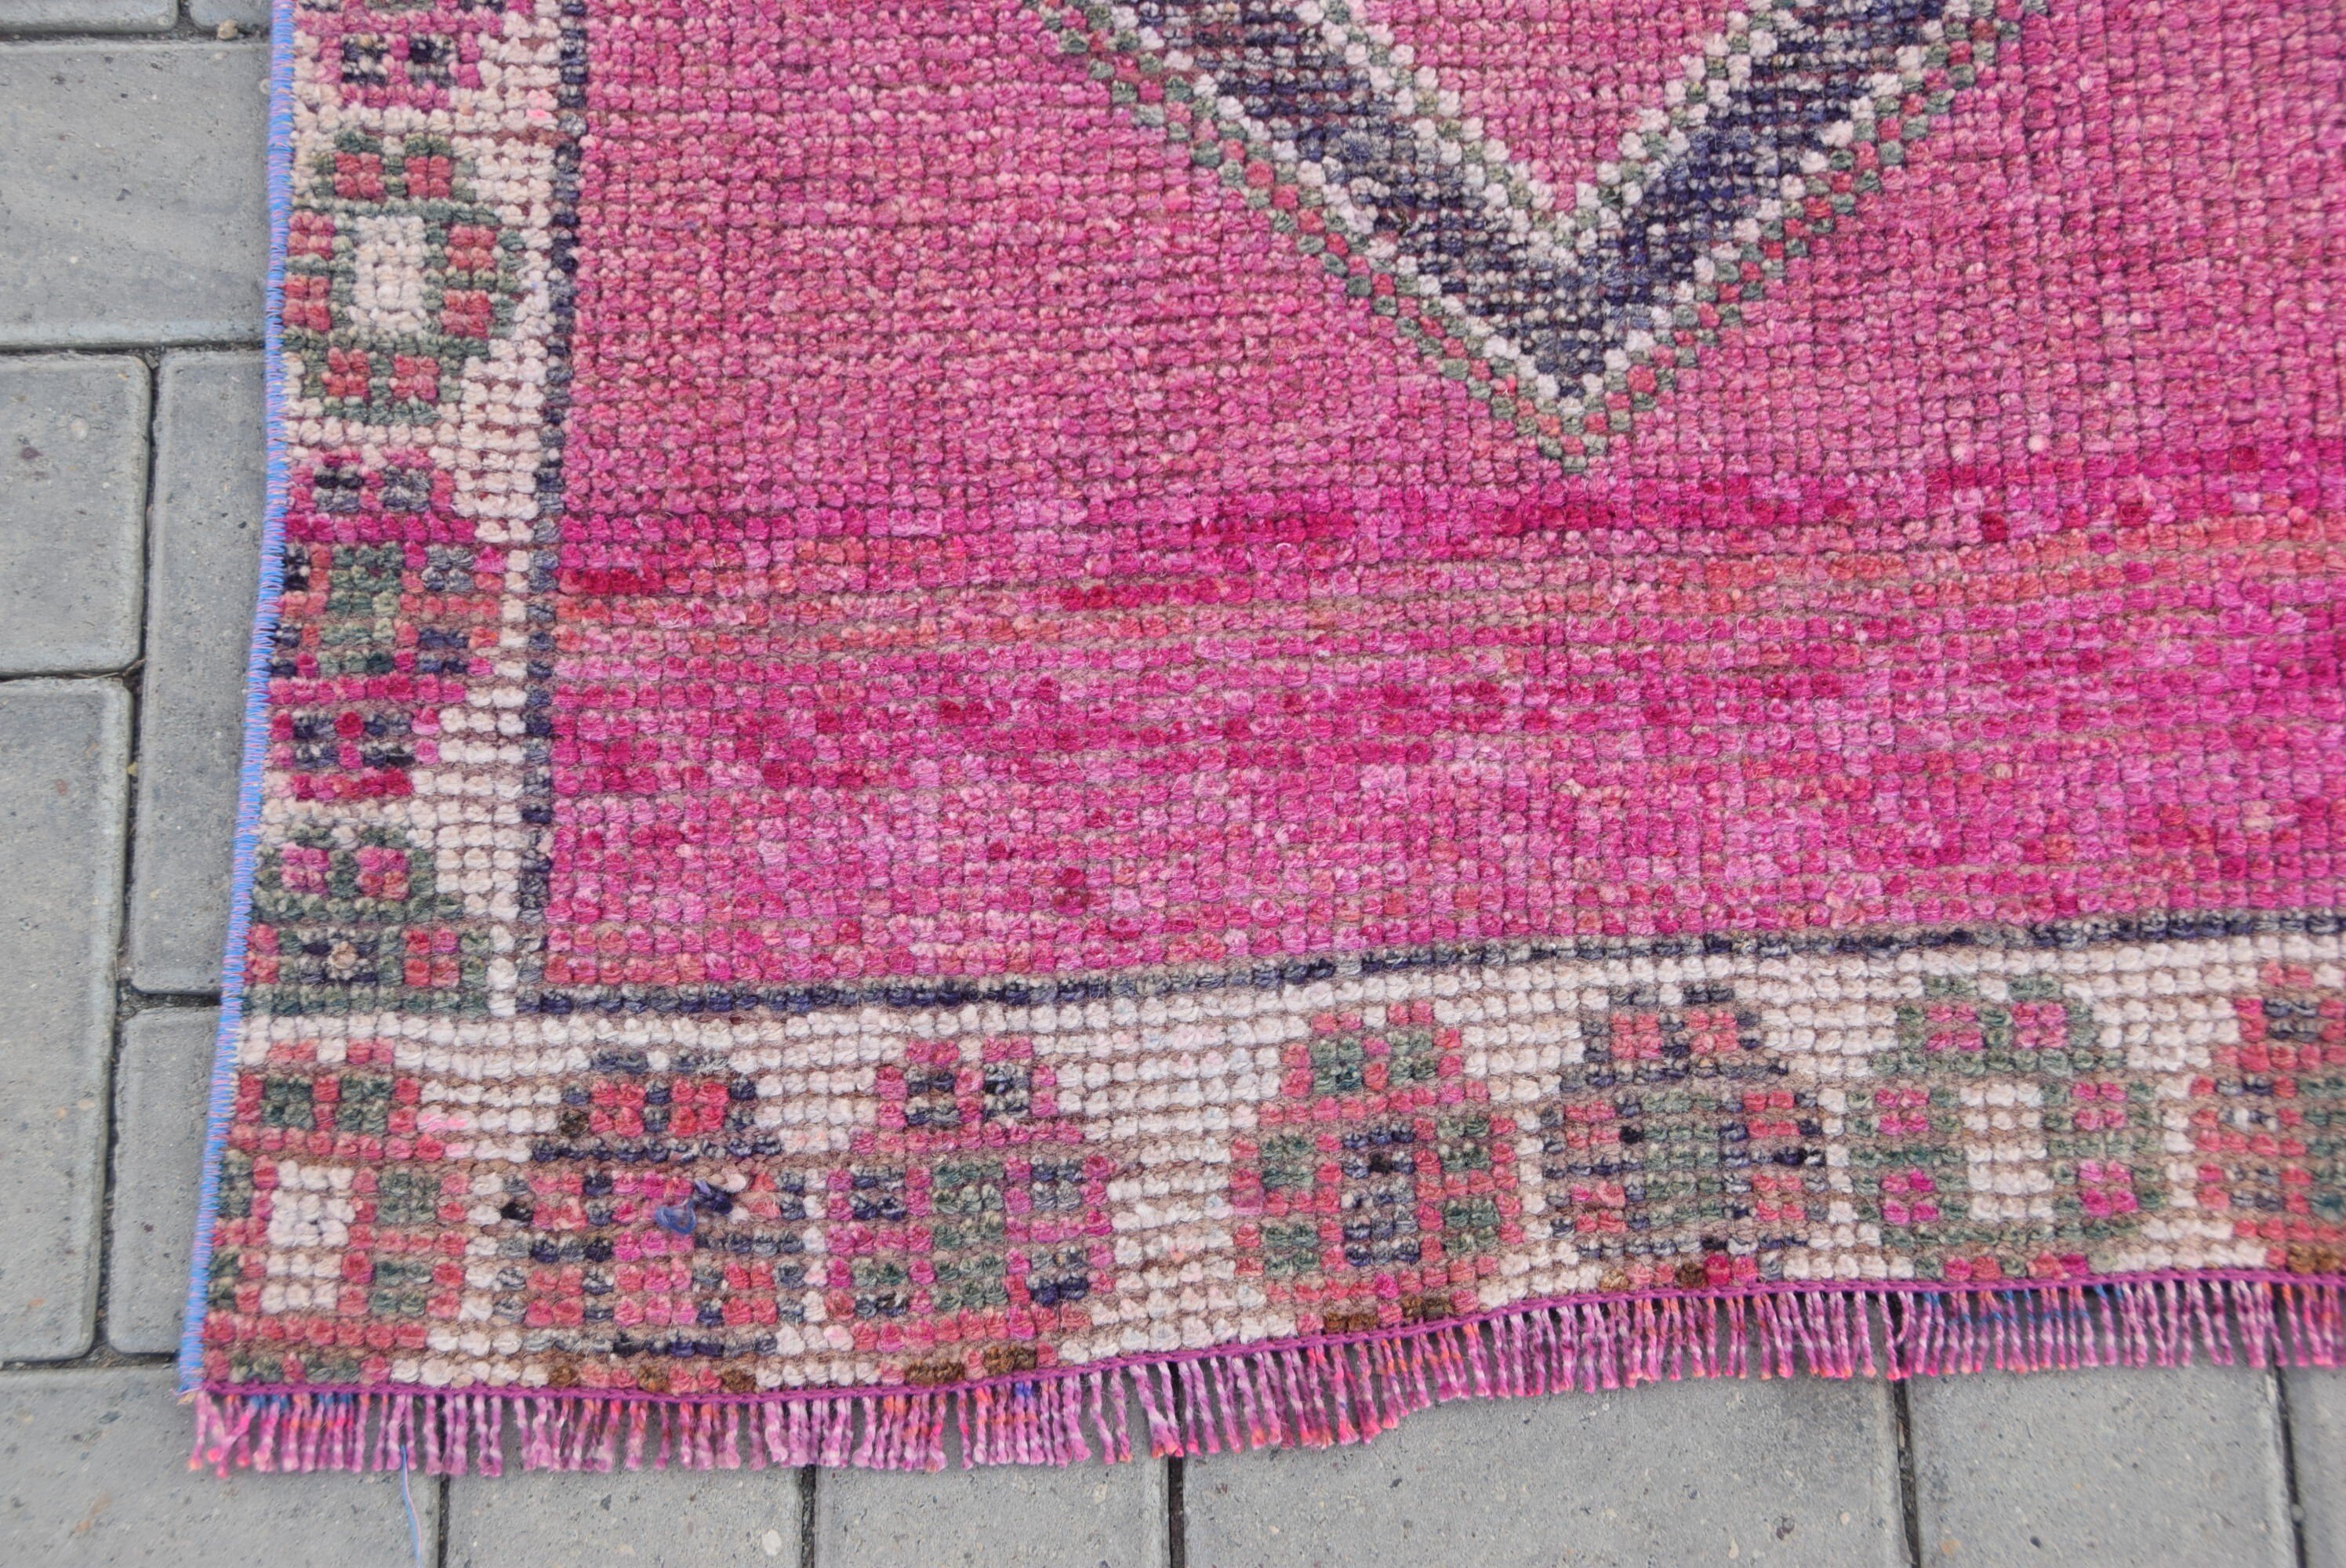 Vintage Rug, Antique Rug, Cool Rug, Turkish Rug, Corridor Rug, Pale Rug, Rugs for Kitchen, Pink Wool Rug, 2.6x8.8 ft Runner Rugs, Stair Rug